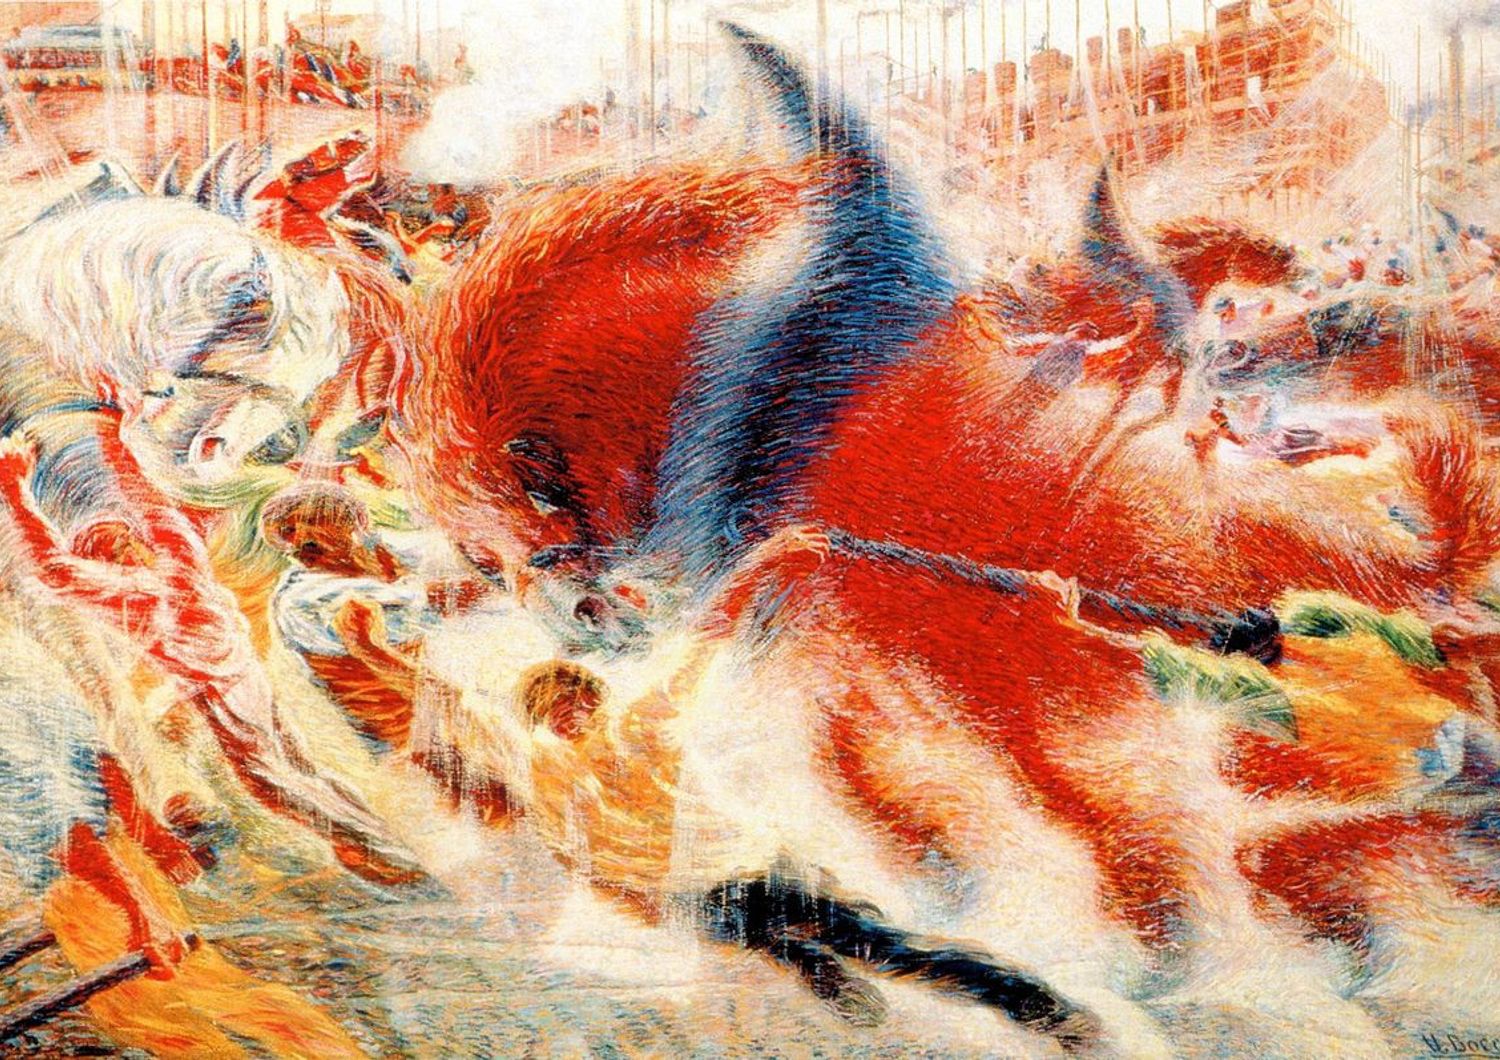 &nbsp;La citt&agrave; che sale a cavallo, Umberto Boccioni, 1911